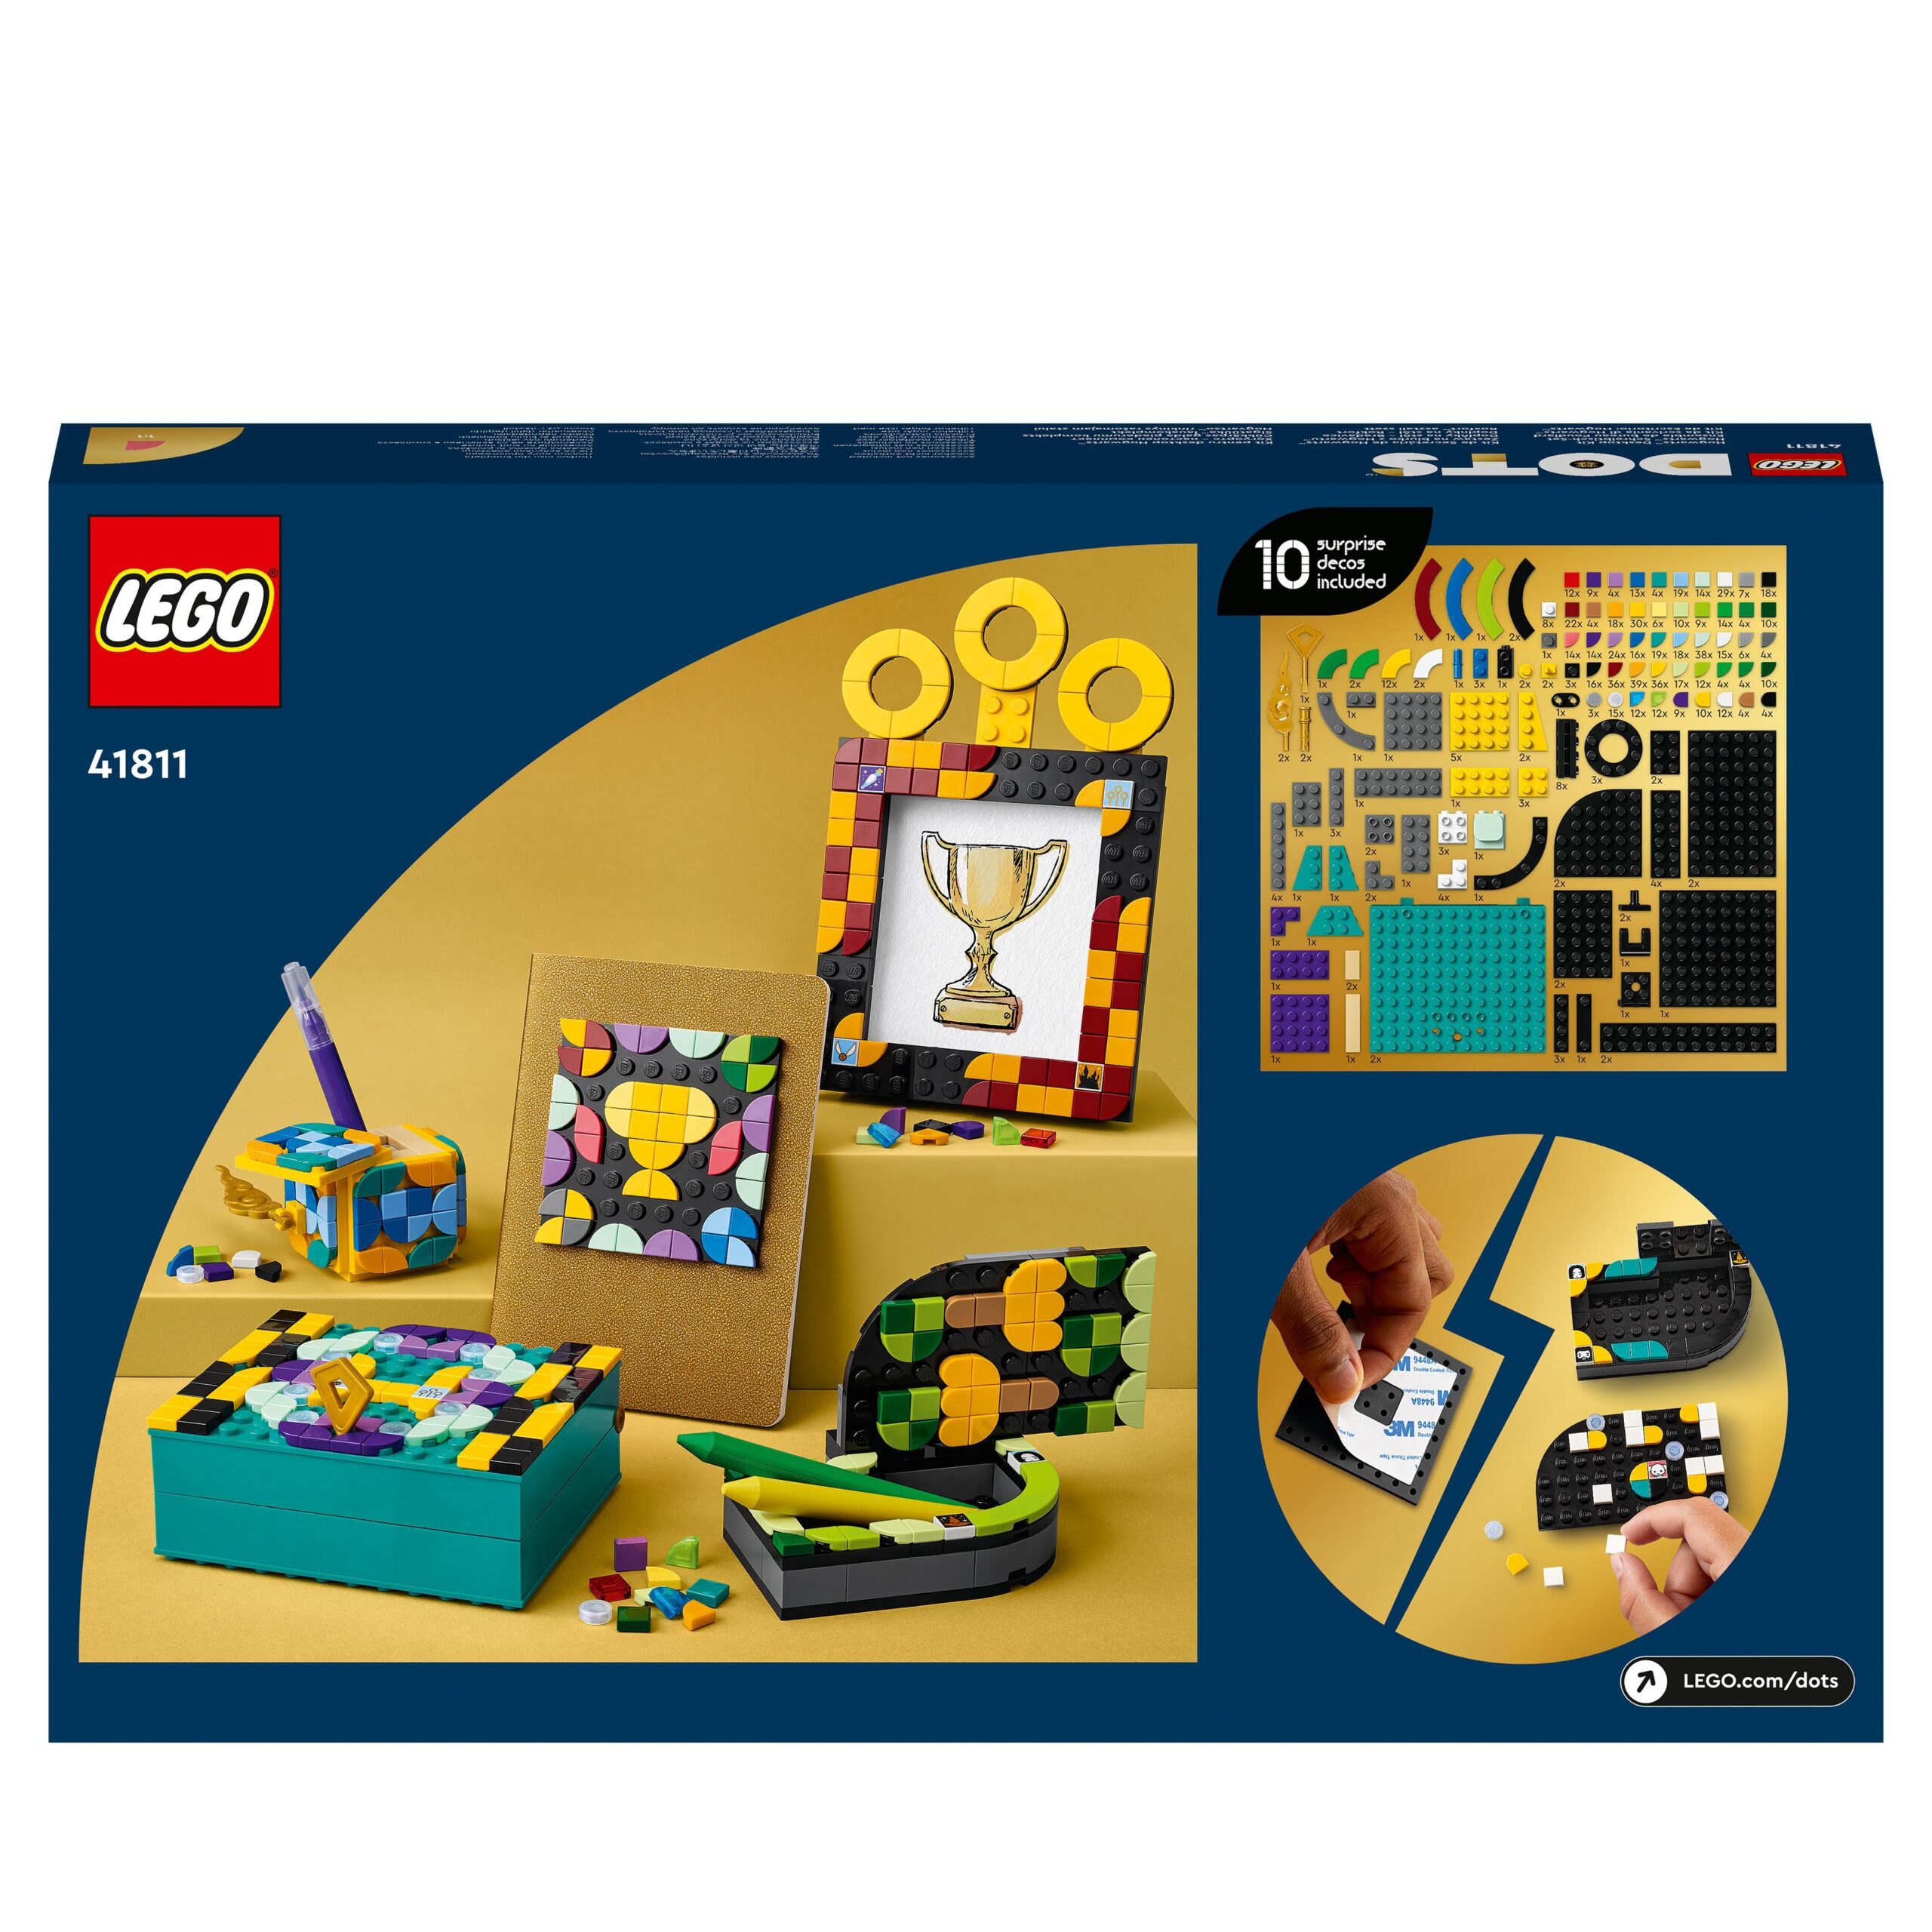 Lego dots 41811 kit da scrivania di hogwarts, accessori scrivania di harry potter con 2 portagioie, portafoto e toppa adesiva - DOTS, LEGO® Harry Potter™